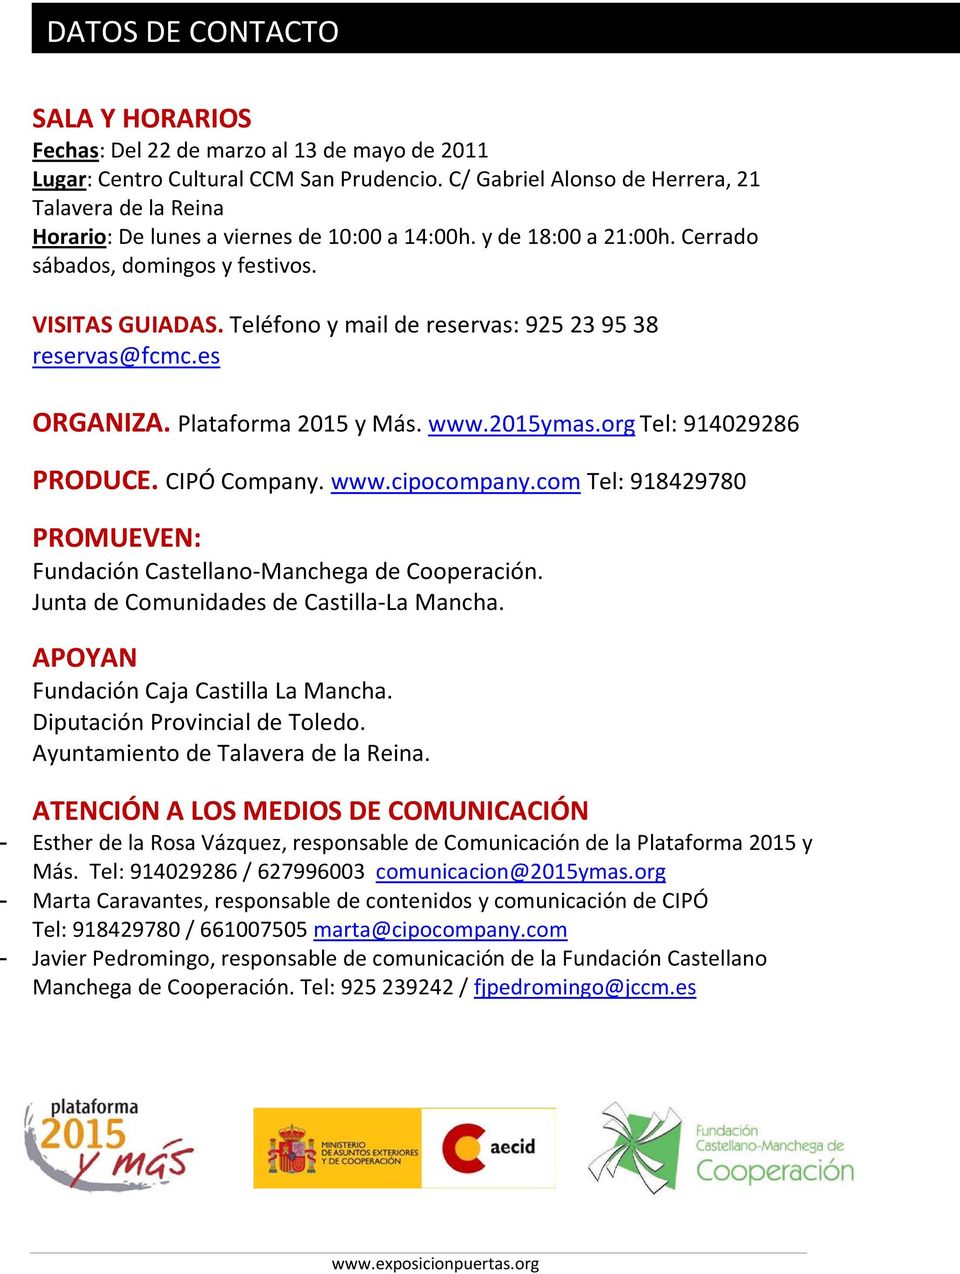 Teléfono y mail de reservas: 925 23 95 38 reservas@fcmc.es ORGANIZA. Plataforma 2015 y Más. www.2015ymas.org Tel: 914029286 PRODUCE. CIPÓ Company. www.cipocompany.